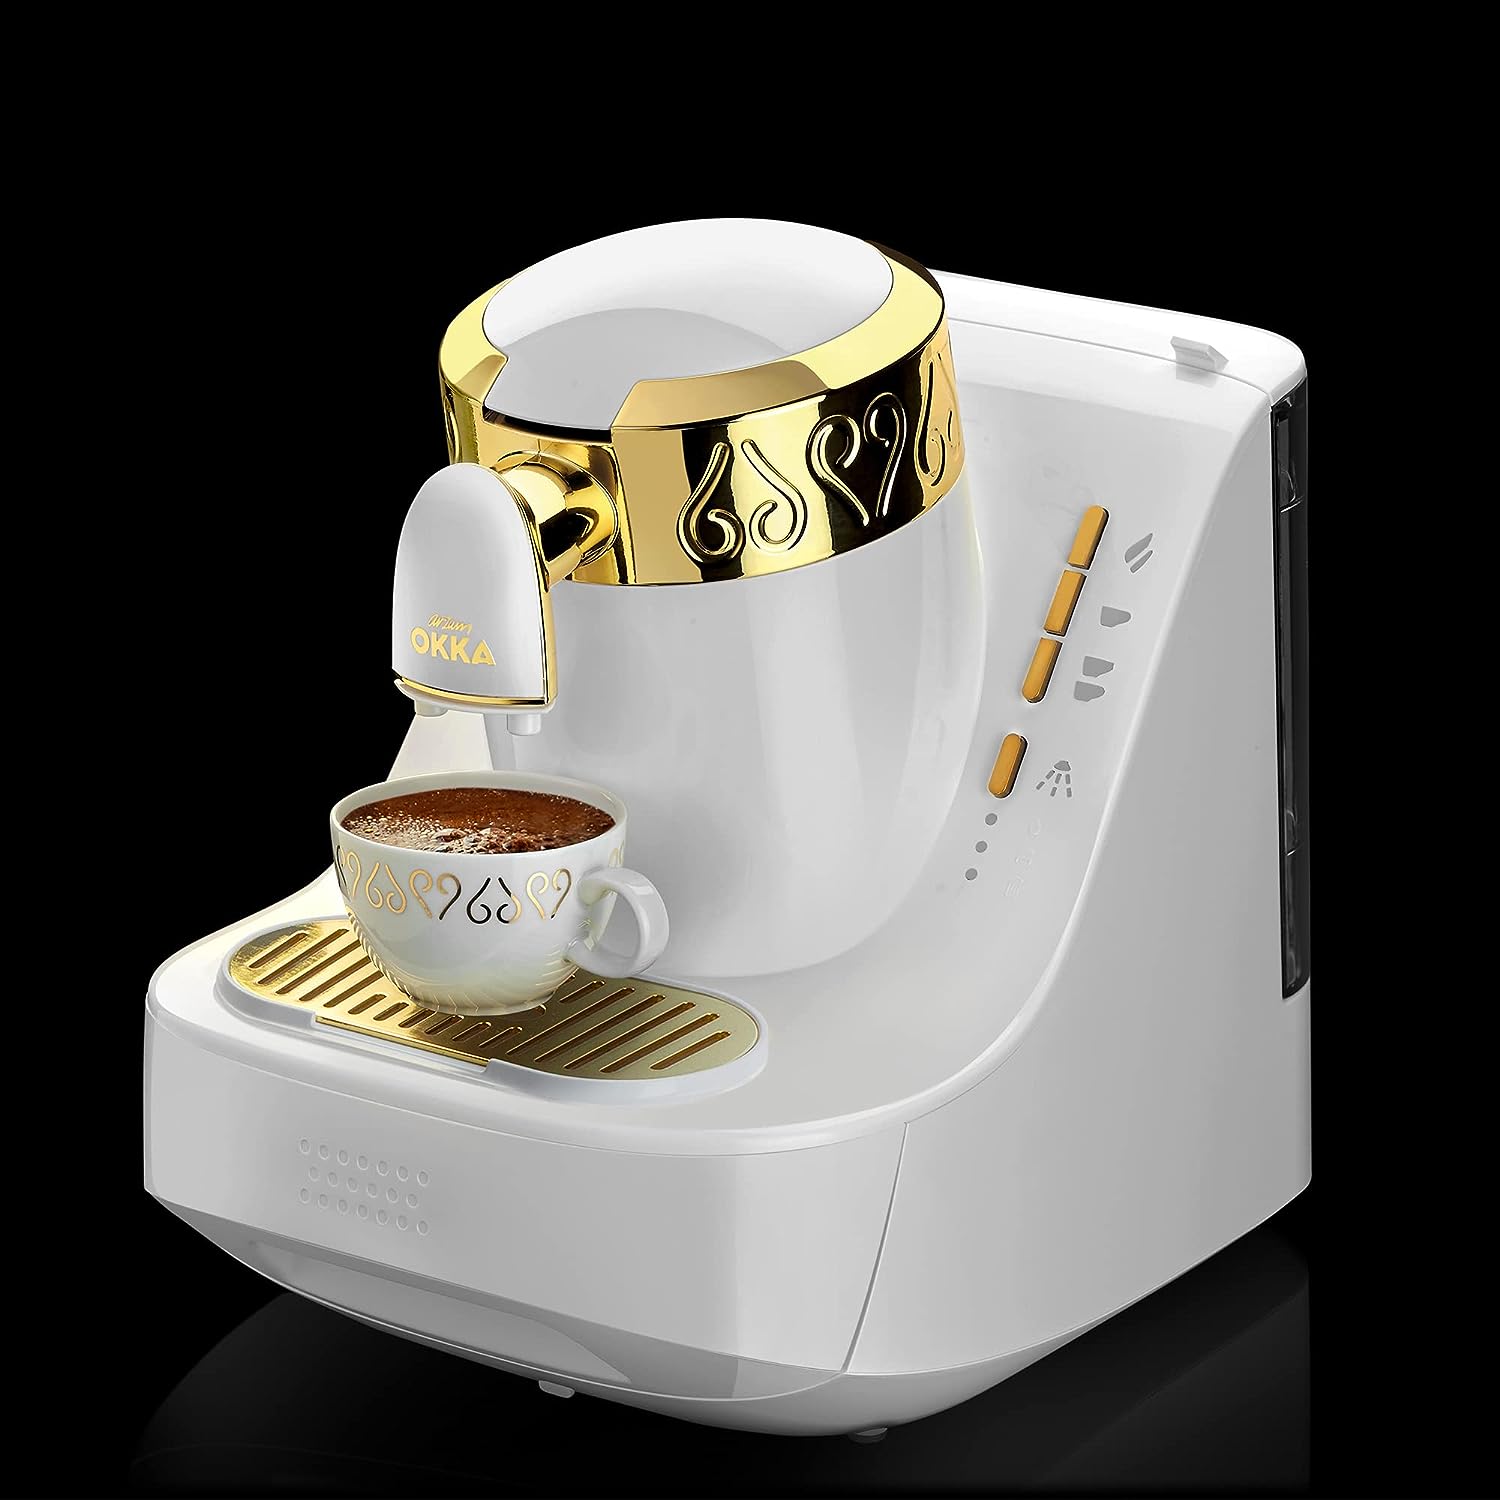 ماكينة تحضير القهوة التركي ارزوم اوكا ، 710 وات ، أبيض x ذهبي ،OK008B